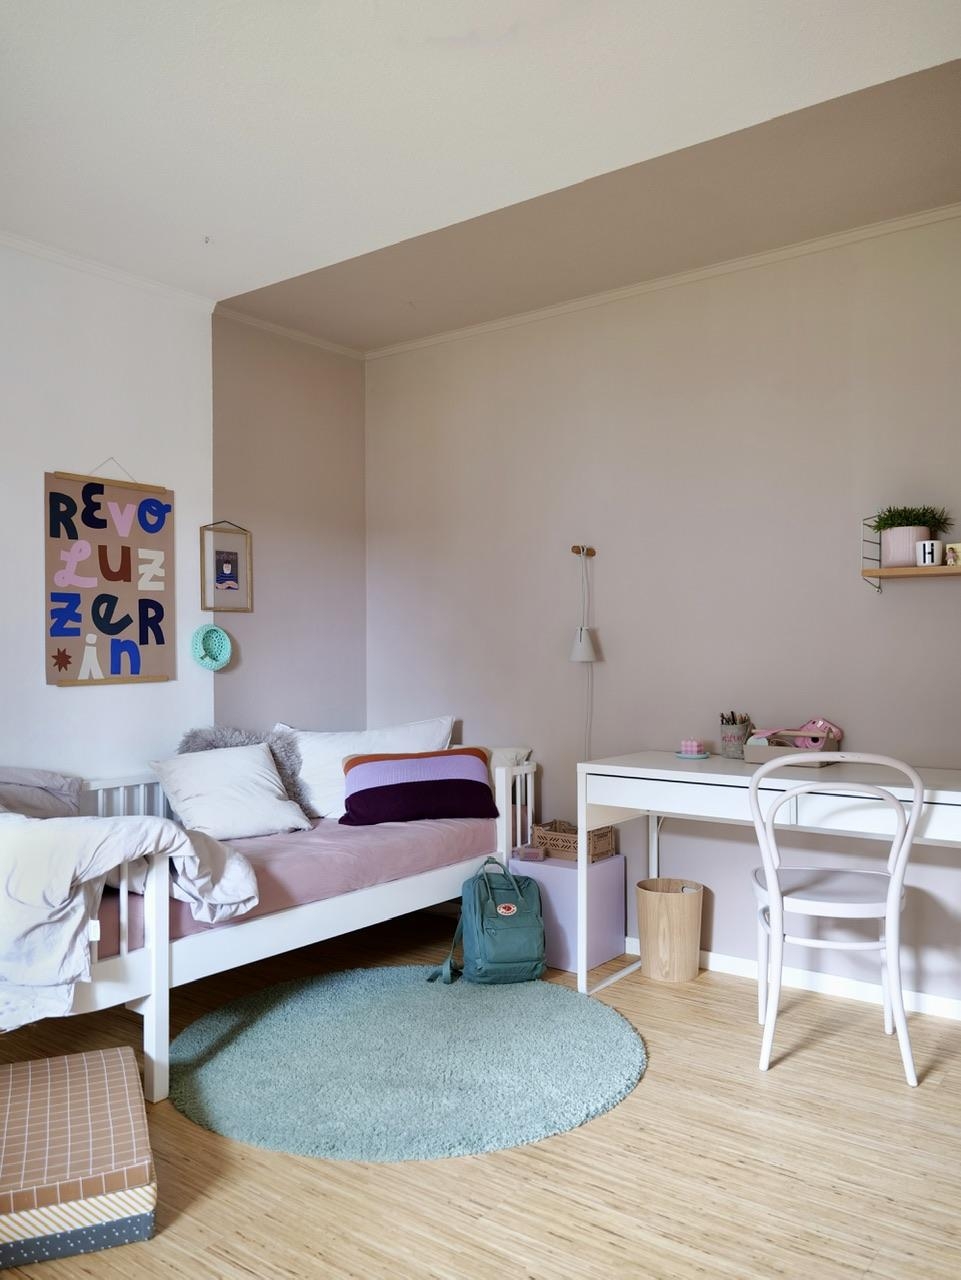 Aus dem #kinderzimmer wurde ein 
#teenie Zimmer. #makeover #farbe #bett #schreibtisch #prints #cozy